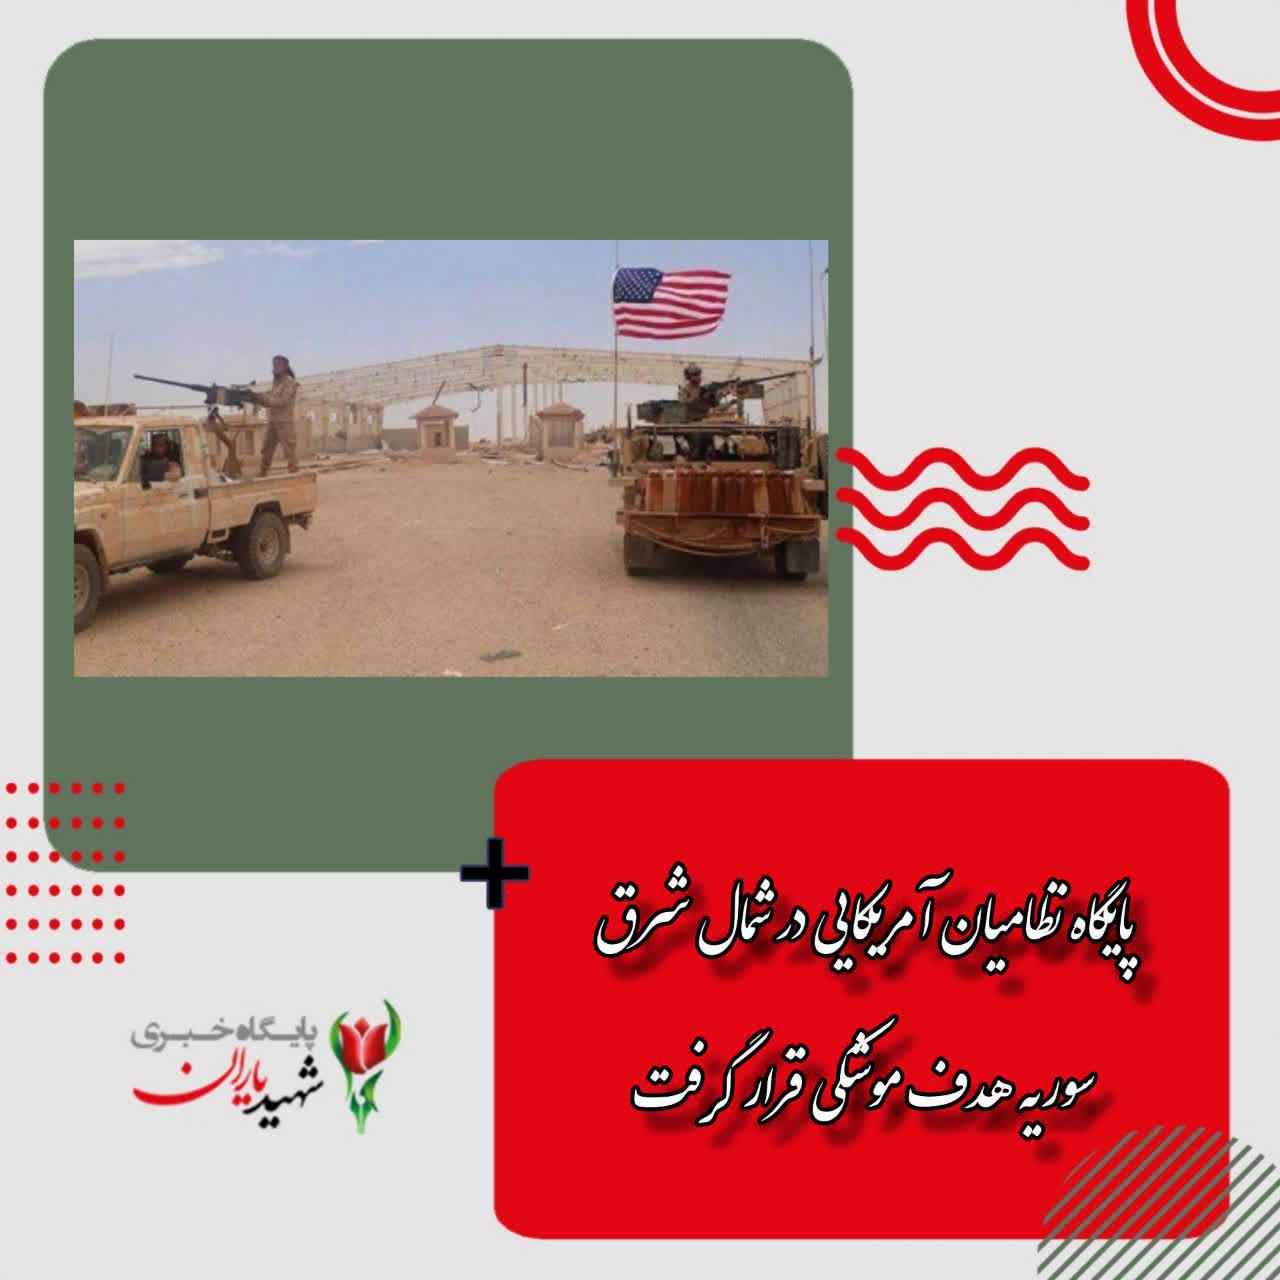 پایگاه نظامیان آمریکایی در شمال شرق سوریه هدف موشکی قرار گرفت